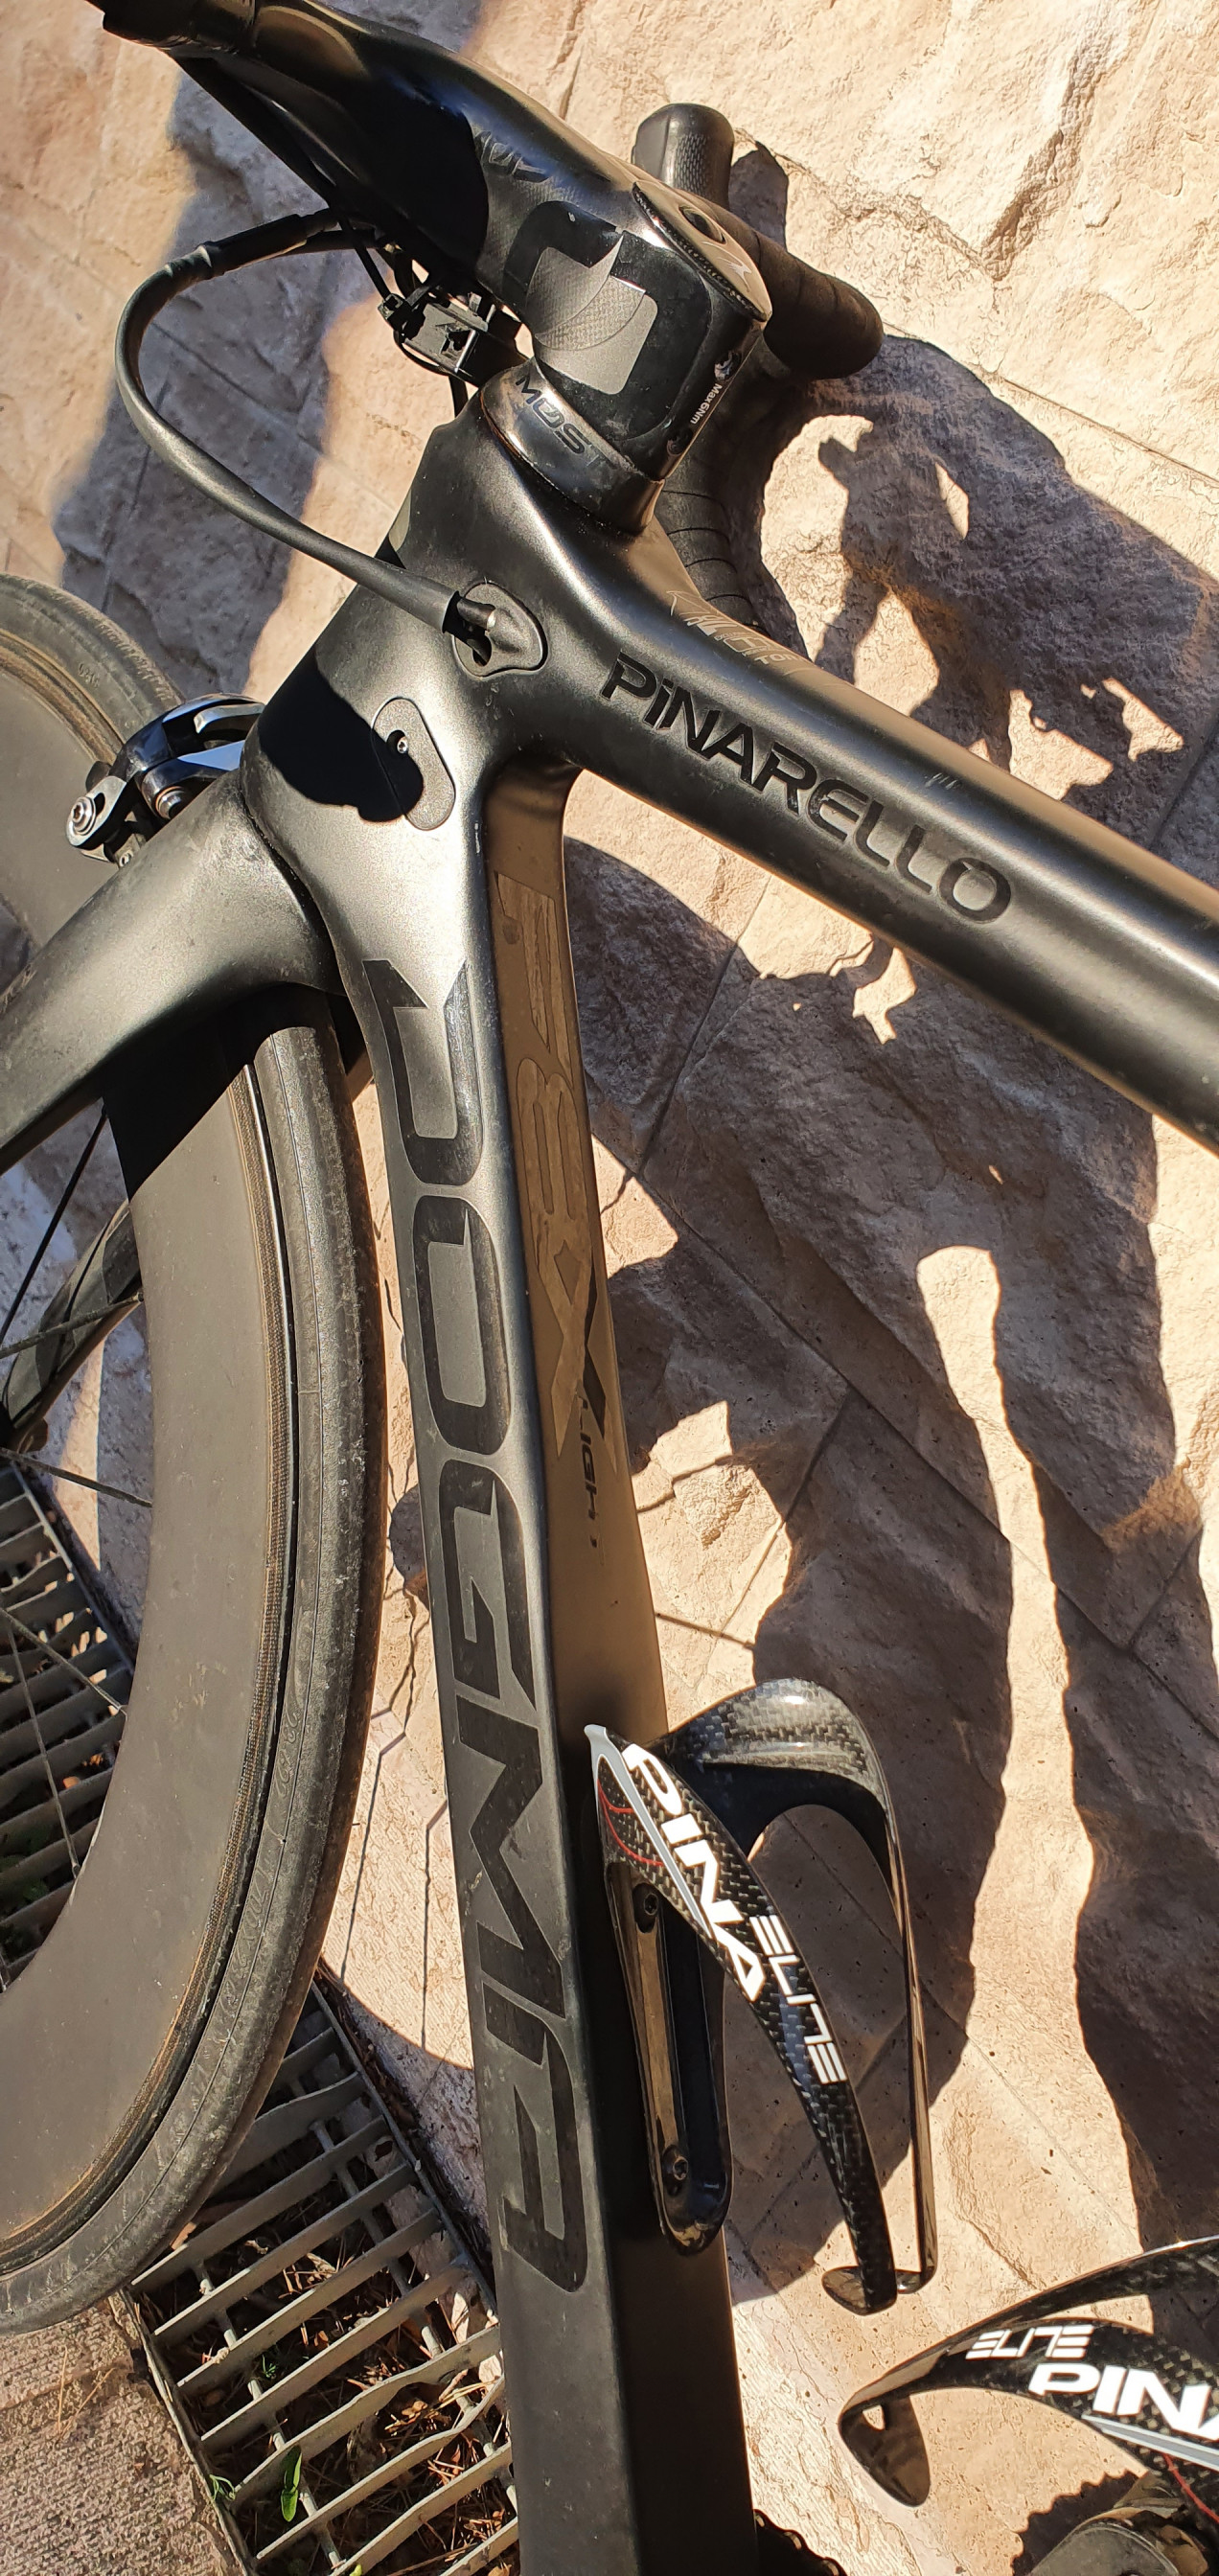 New & Used Pinarello Bikes - F8, F12, 60.1